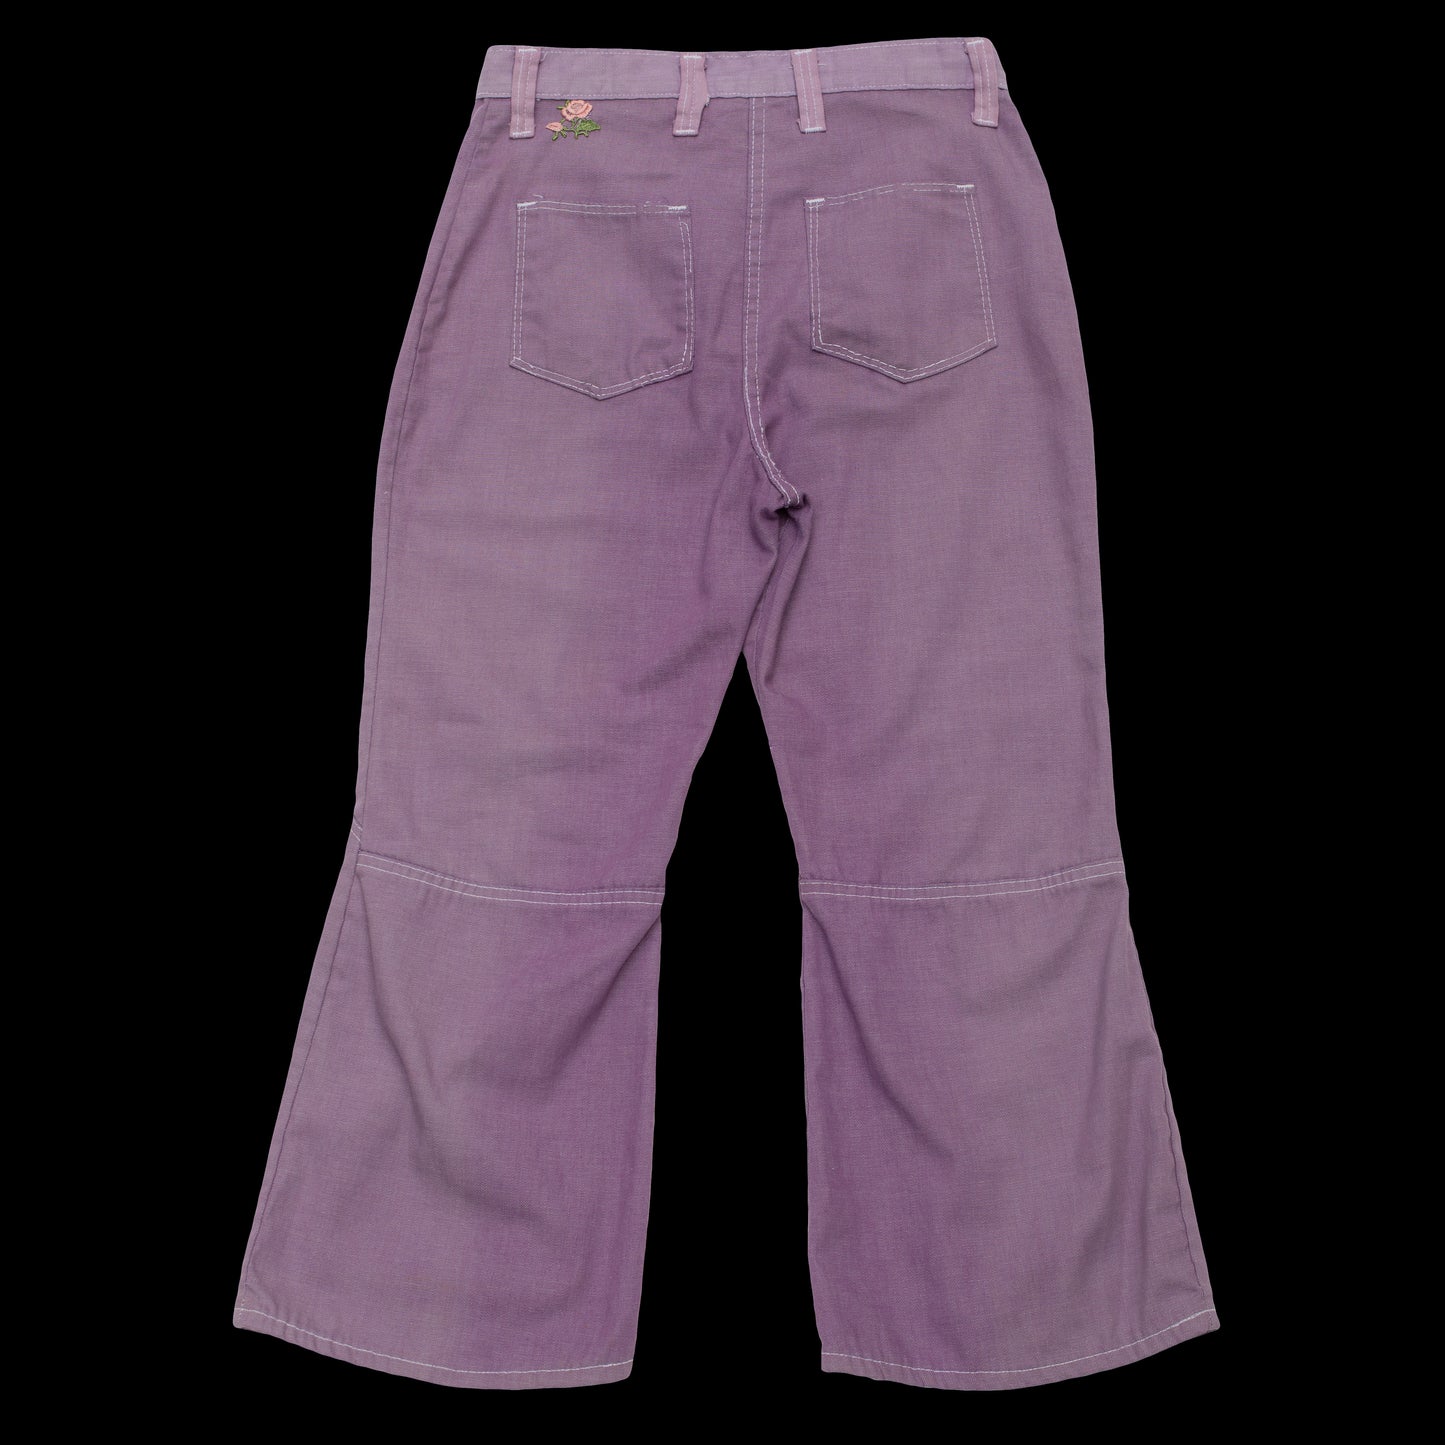 Vintage 1960s Purple Lace-Up Jeans 30 Waist – WORN